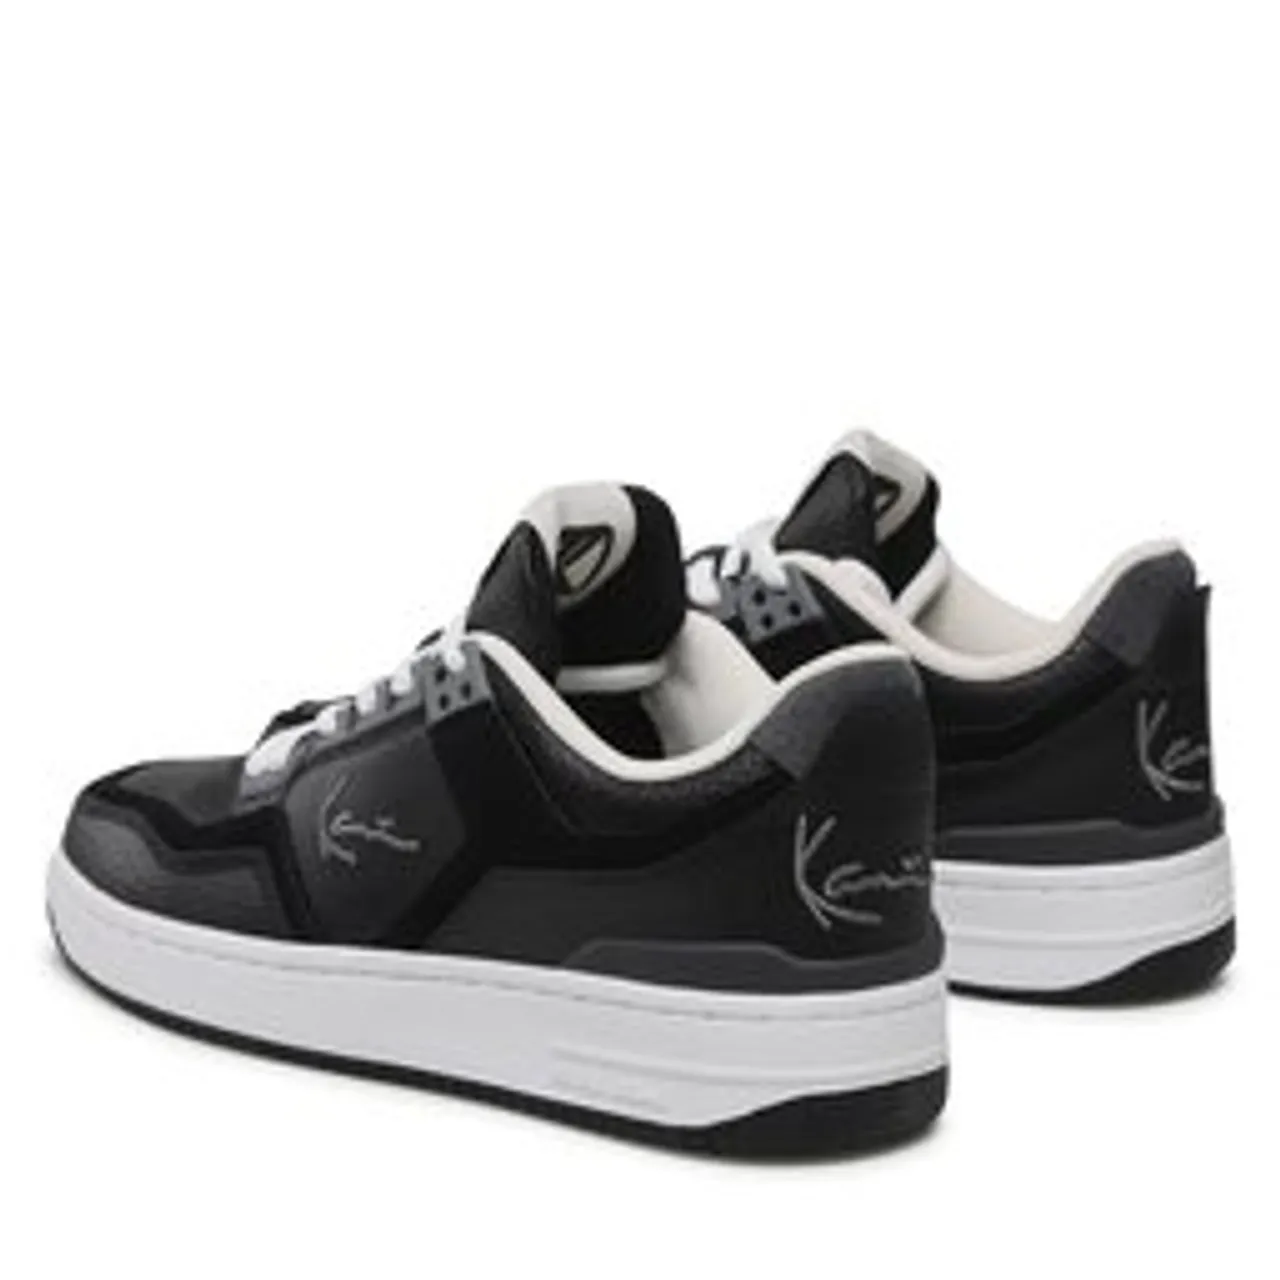 Sneakers Karl Kani Kani 89 LXRY PRM 1080171 Black/Grey